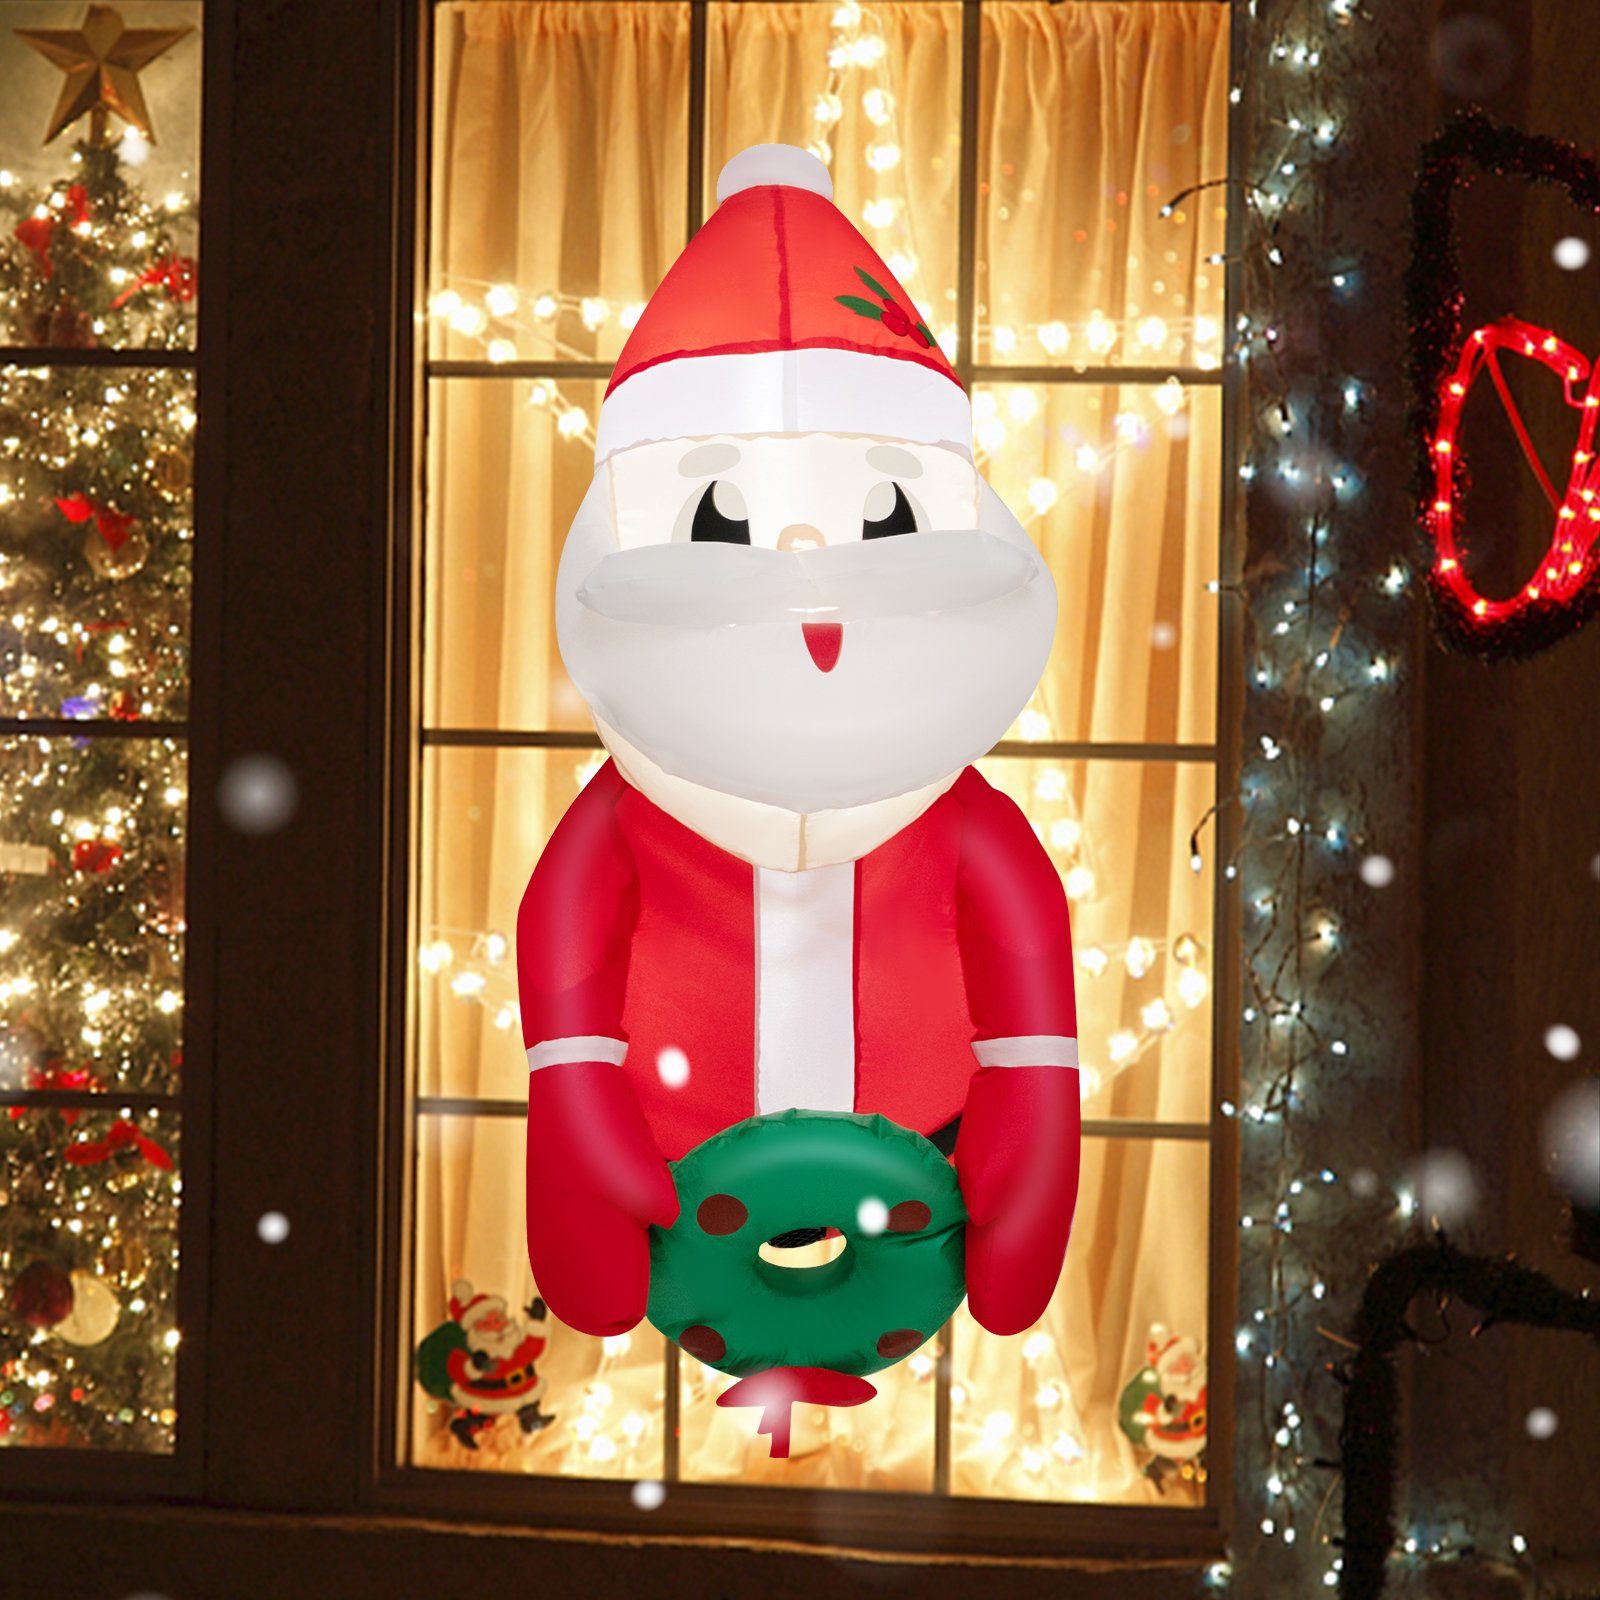 COSTWAY Weihnachtsmann, 100cm LED Weihnachtsdeko am Fenster, aufblasbar